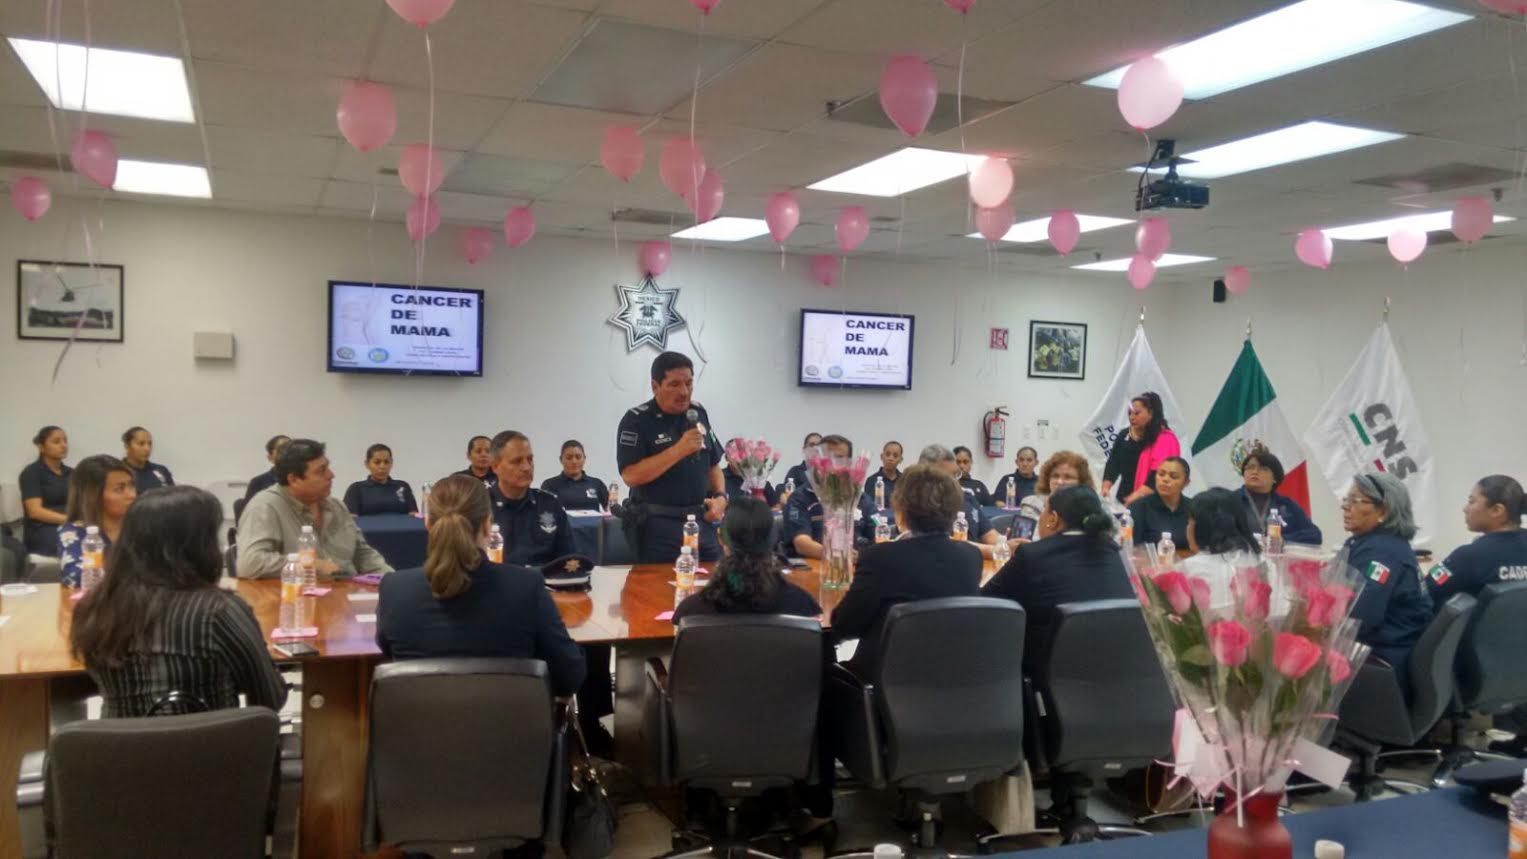 Policía Federal preside reunión sobre el cáncer de mama